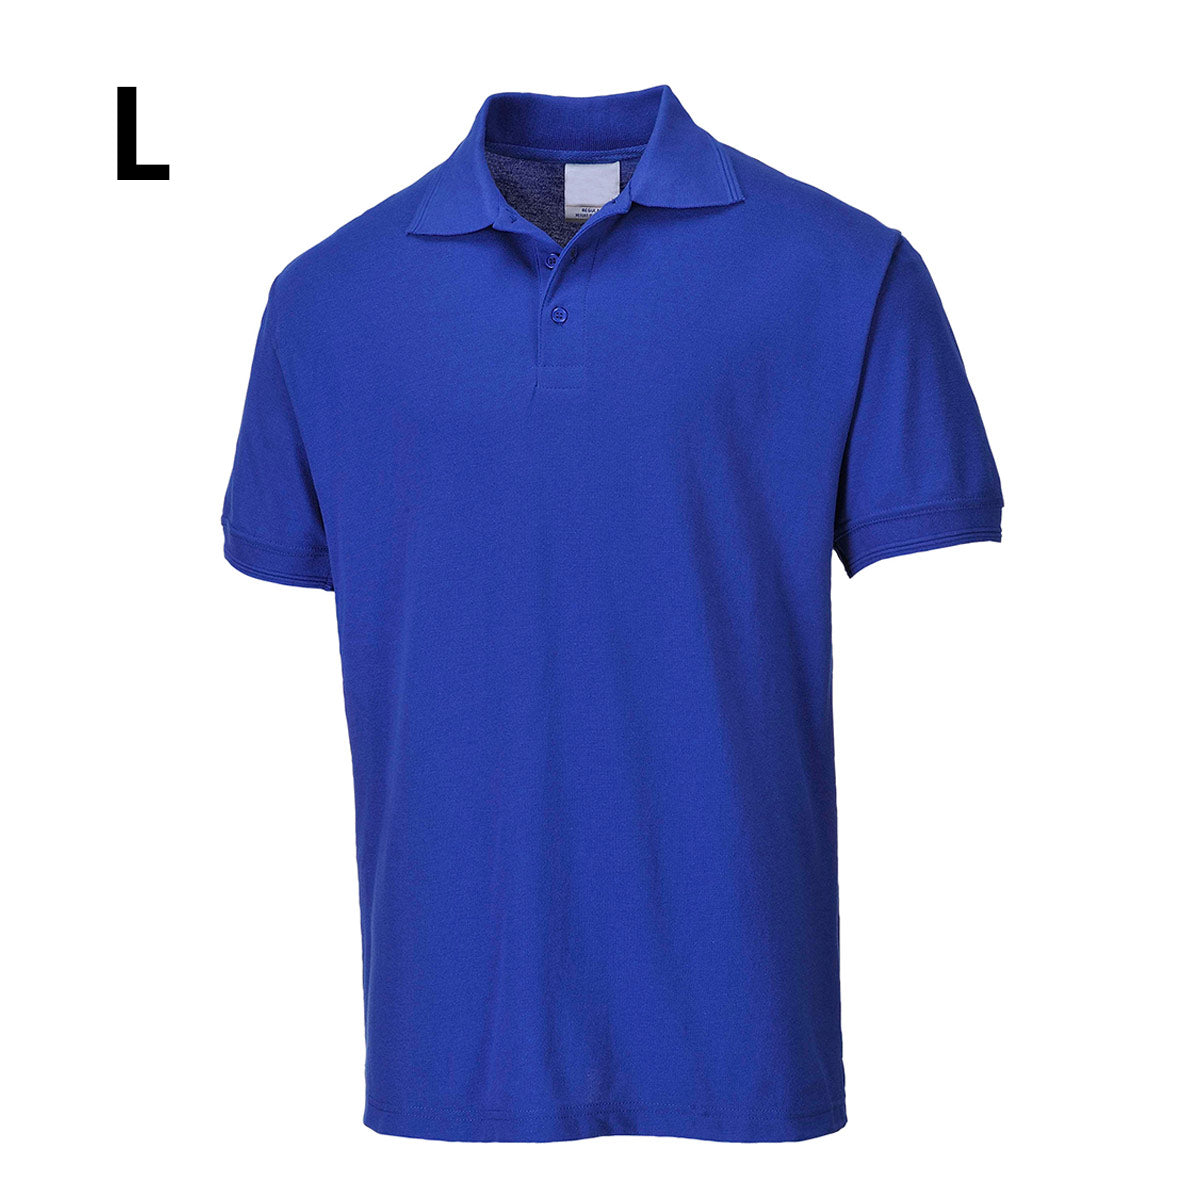 Poloskjorte for menn - kongeblå - størrelse: L